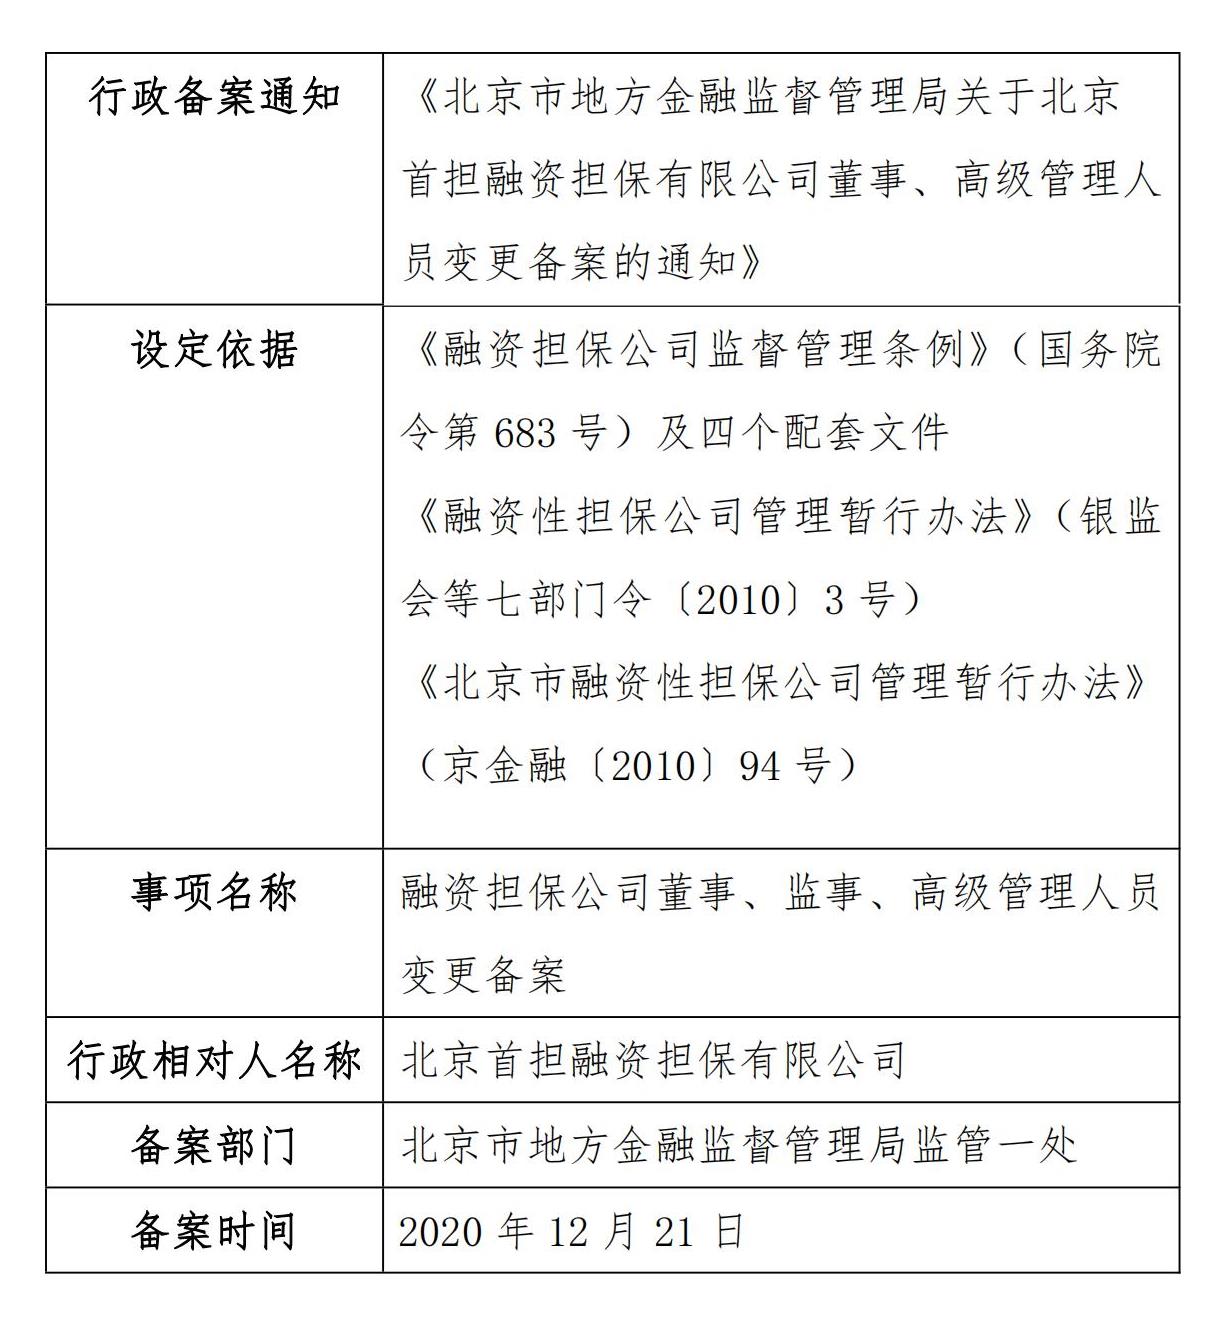 北京市地方金融监督管理局关于北京首担融资担保有限公司董事、高级管理人员变更备案的通知